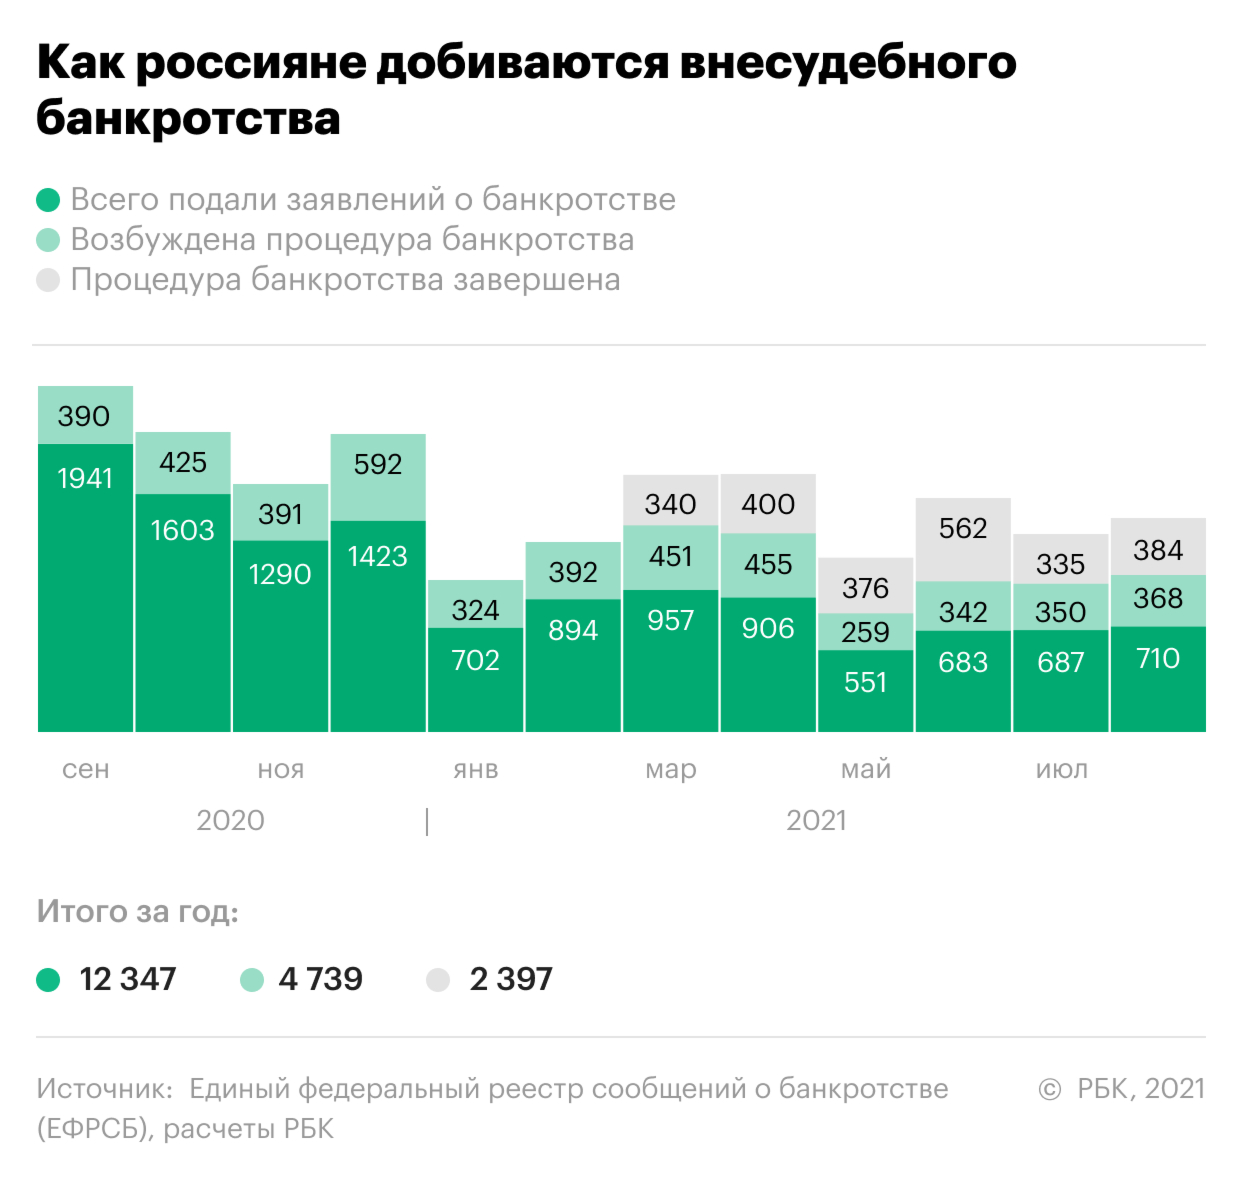 За год бесплатного банкротства без суда добились 2,4 тыс. россиян